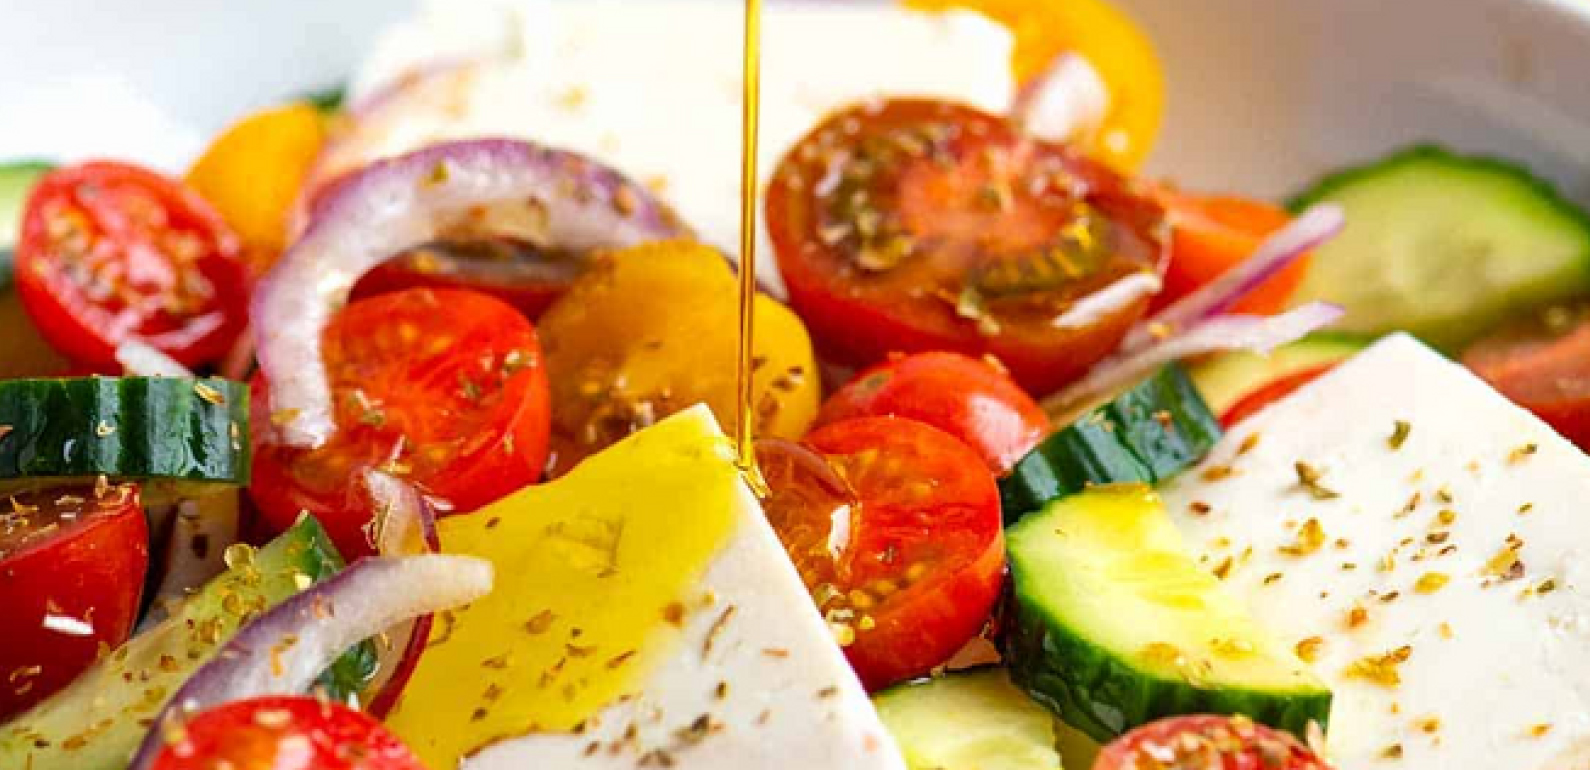 סלט יווני: מתכוני אוכל יווני - מתכוני כרתים עם שמן זית